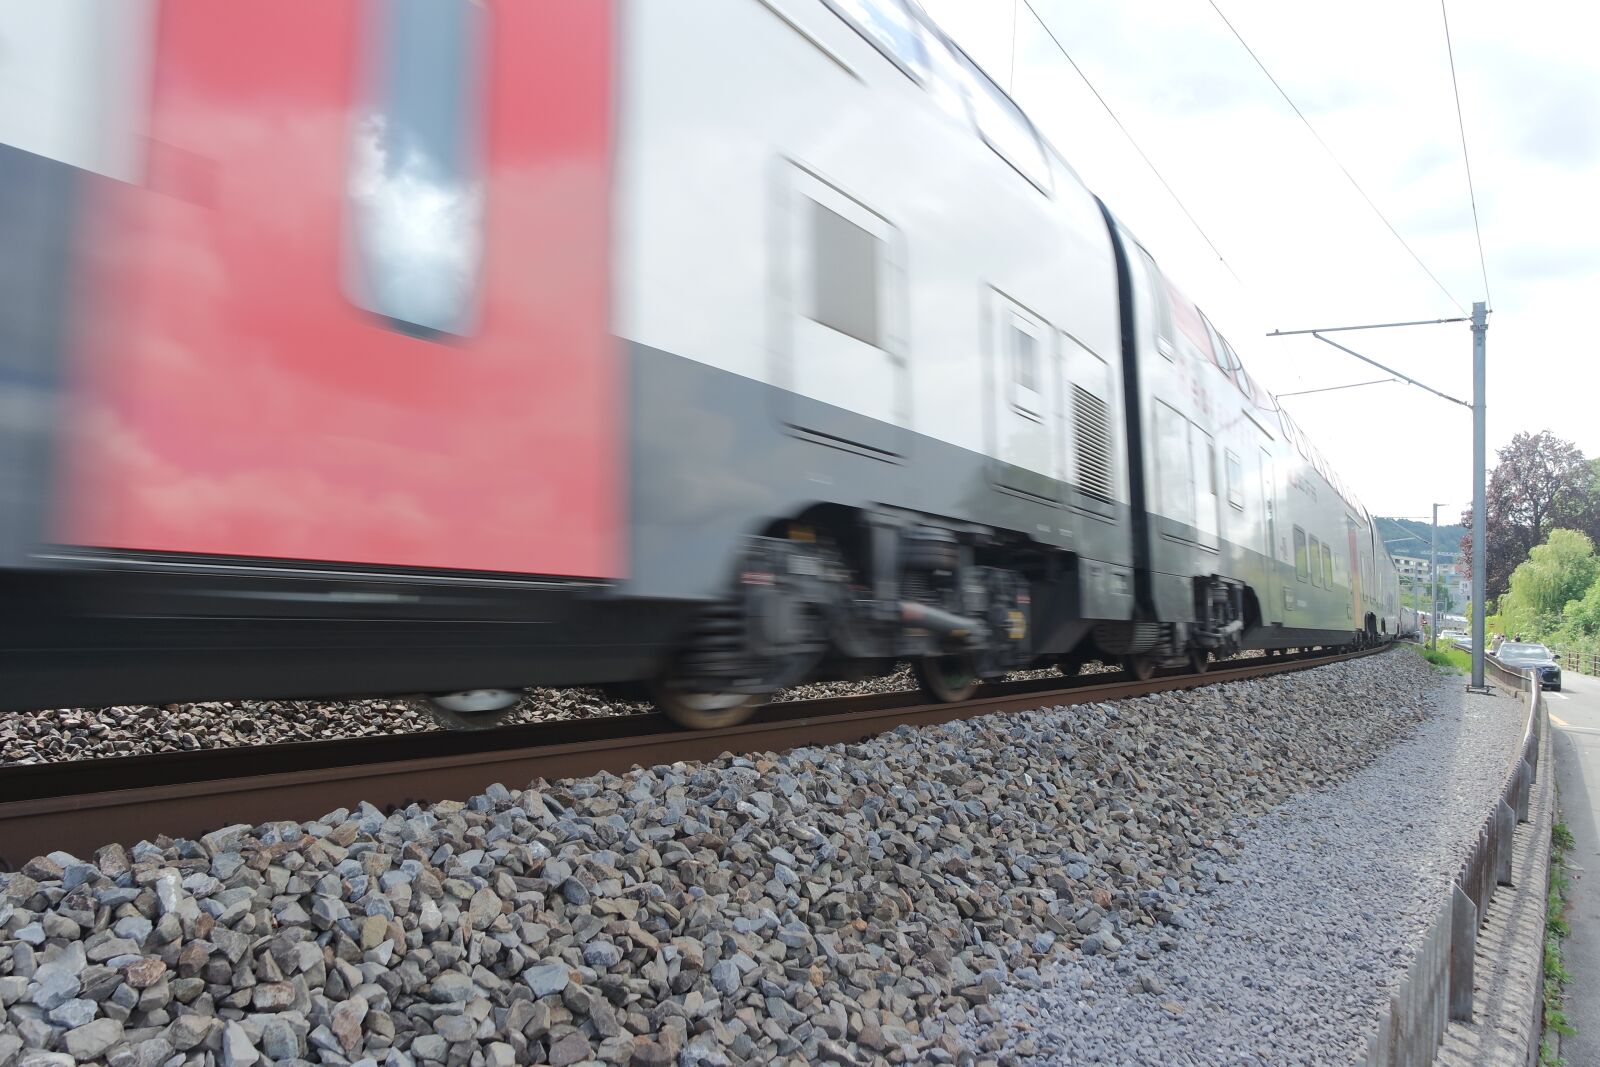 Samsung NX3000 sample photo. Zurich, lake zurich, train photography